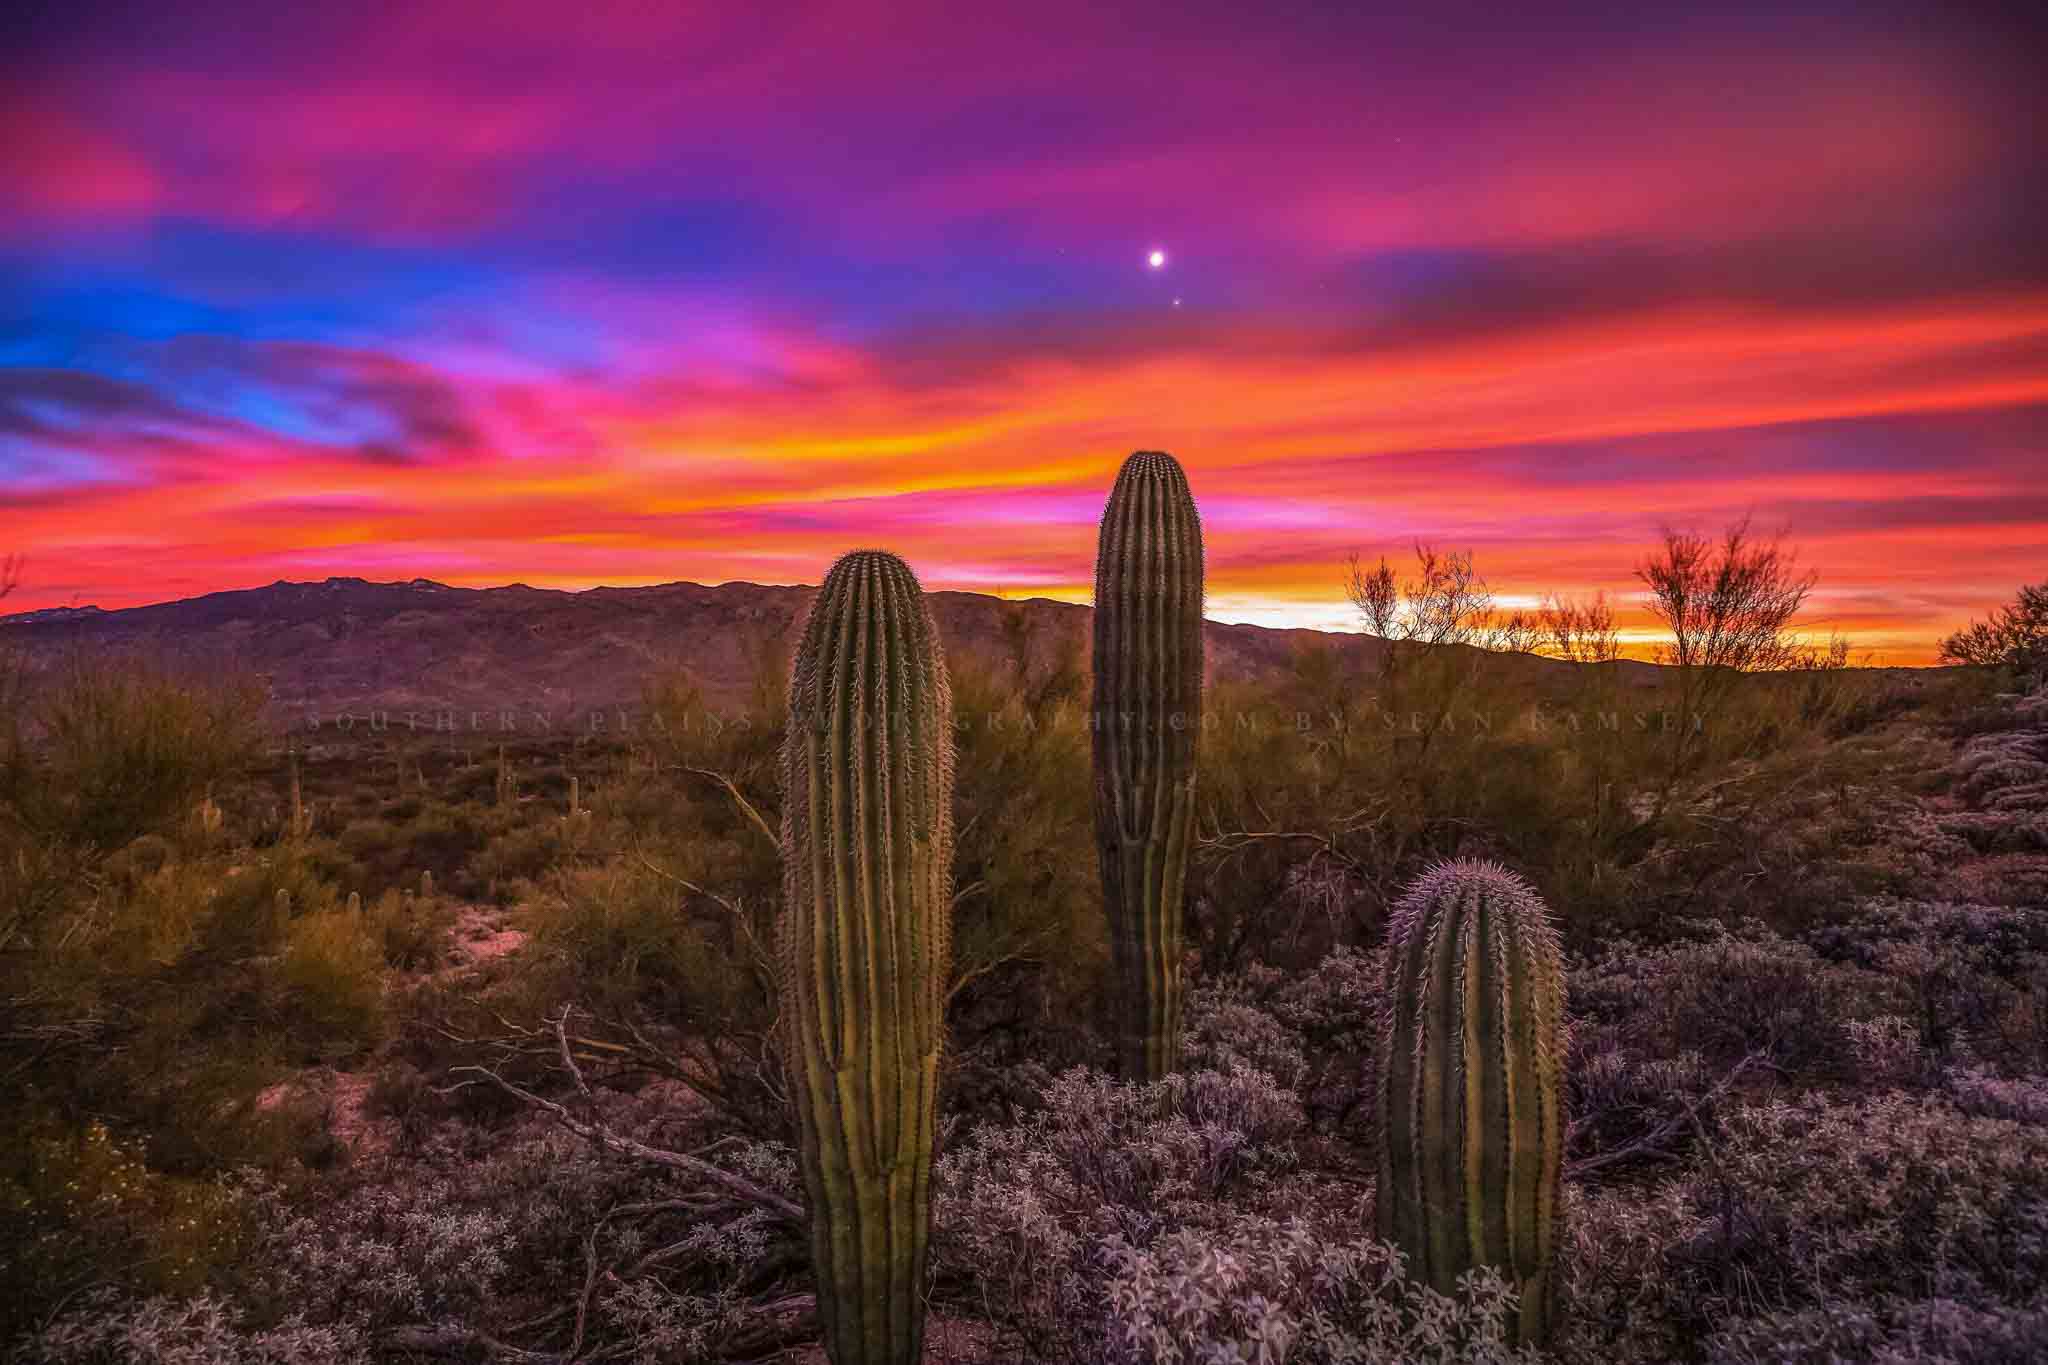 sonoran desert saguaro cactus